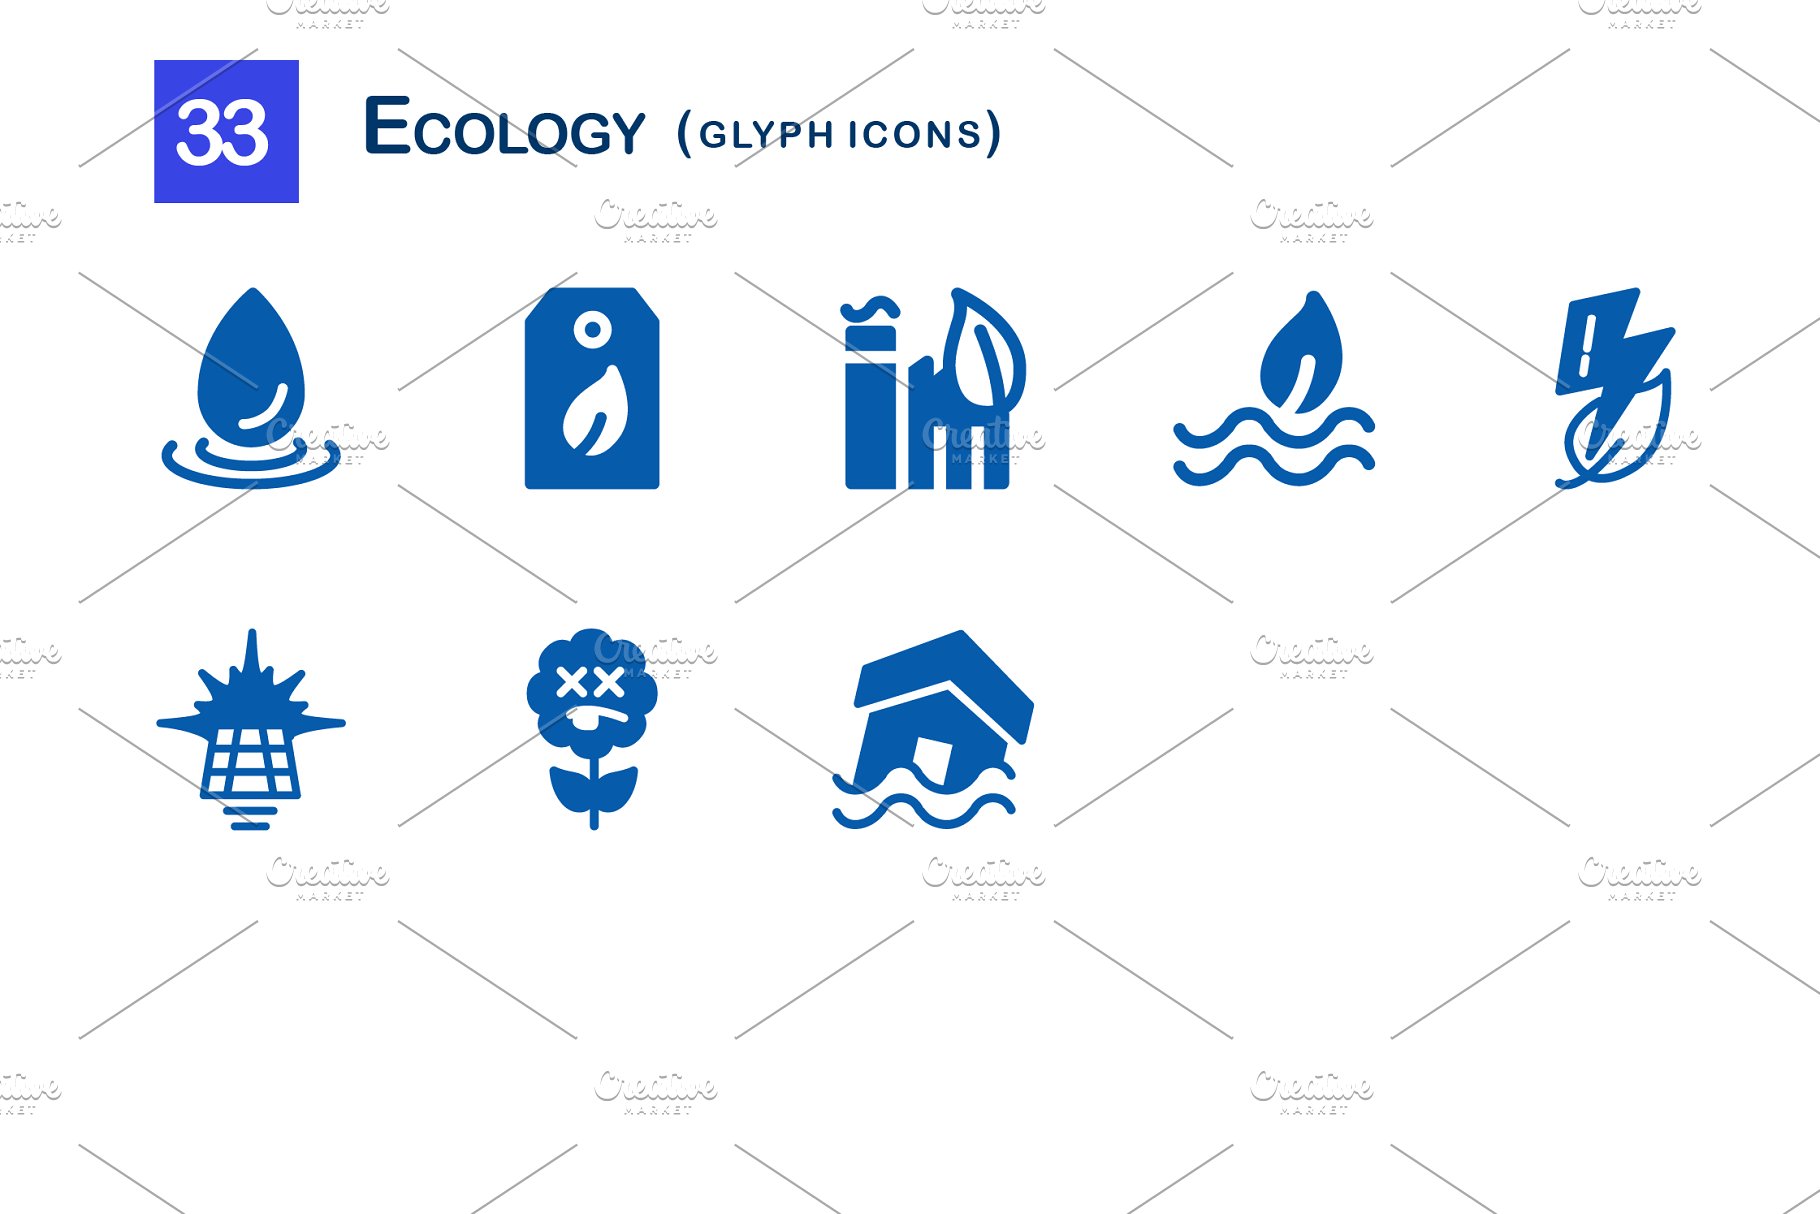 33个生态字体图标集  33 Ecology Glyph Icons插图(2)